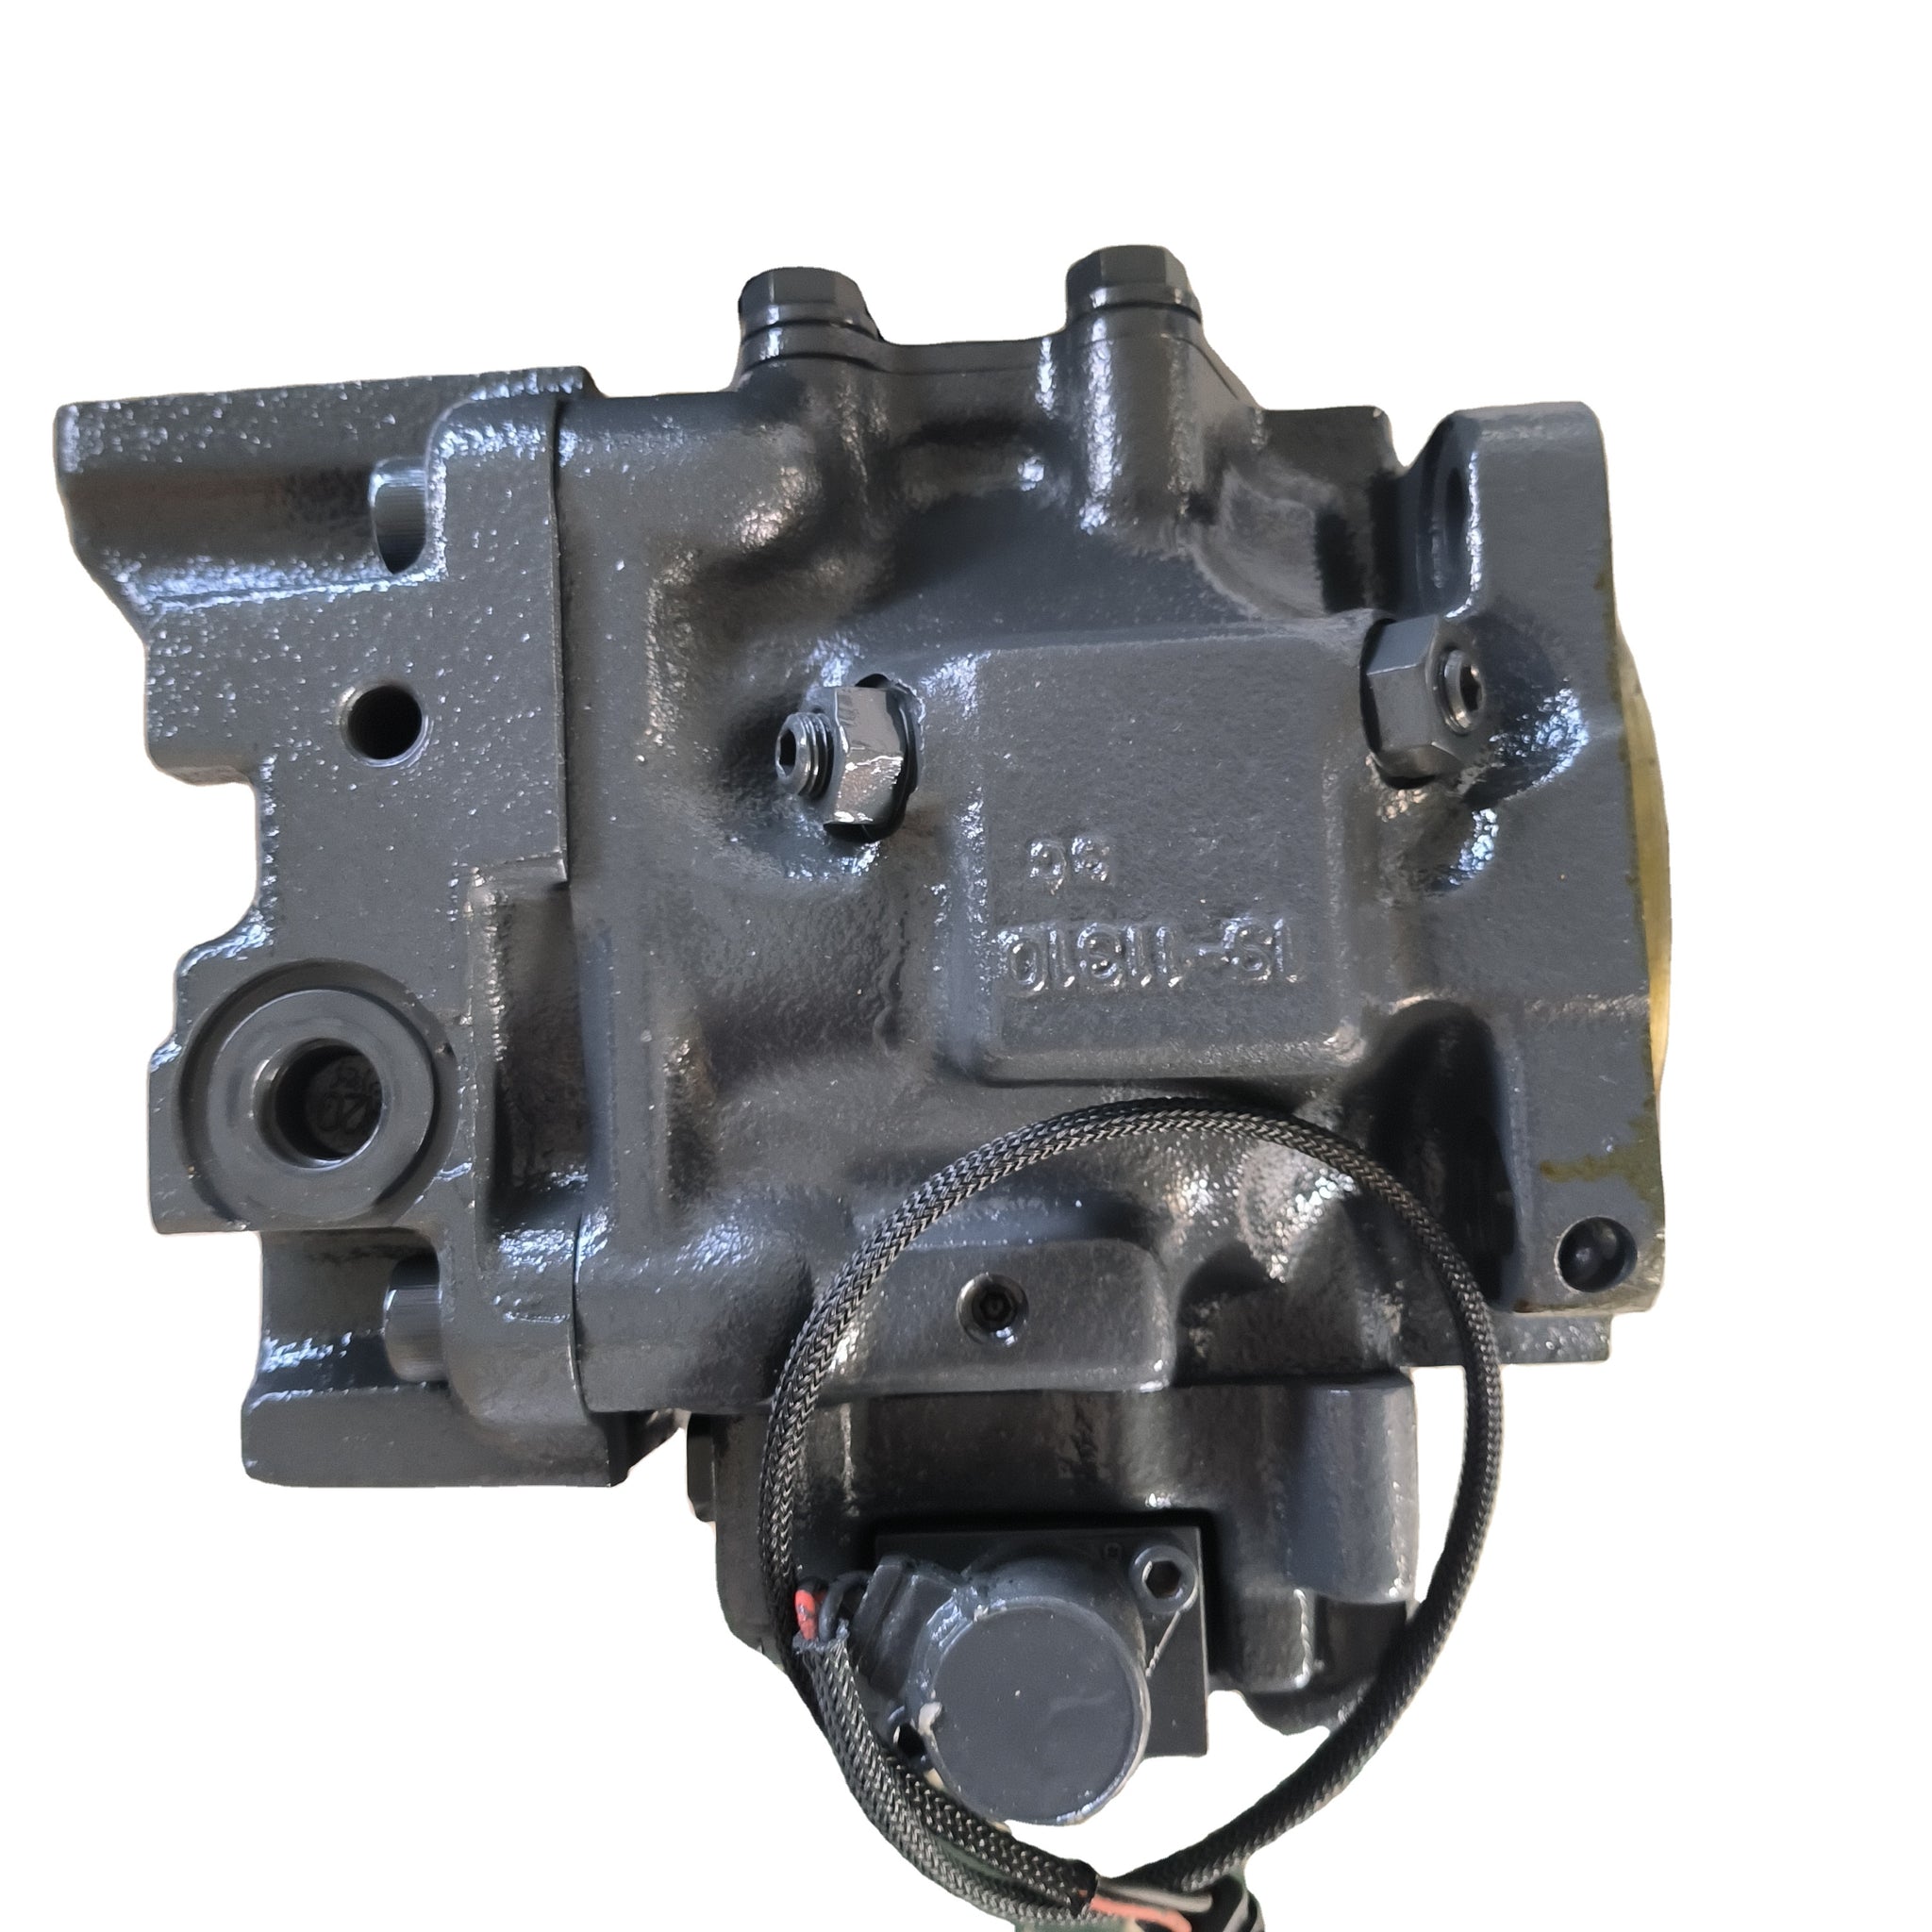 Hydraulic pump 708-1S-00970 for Komatsu WA500 Loader